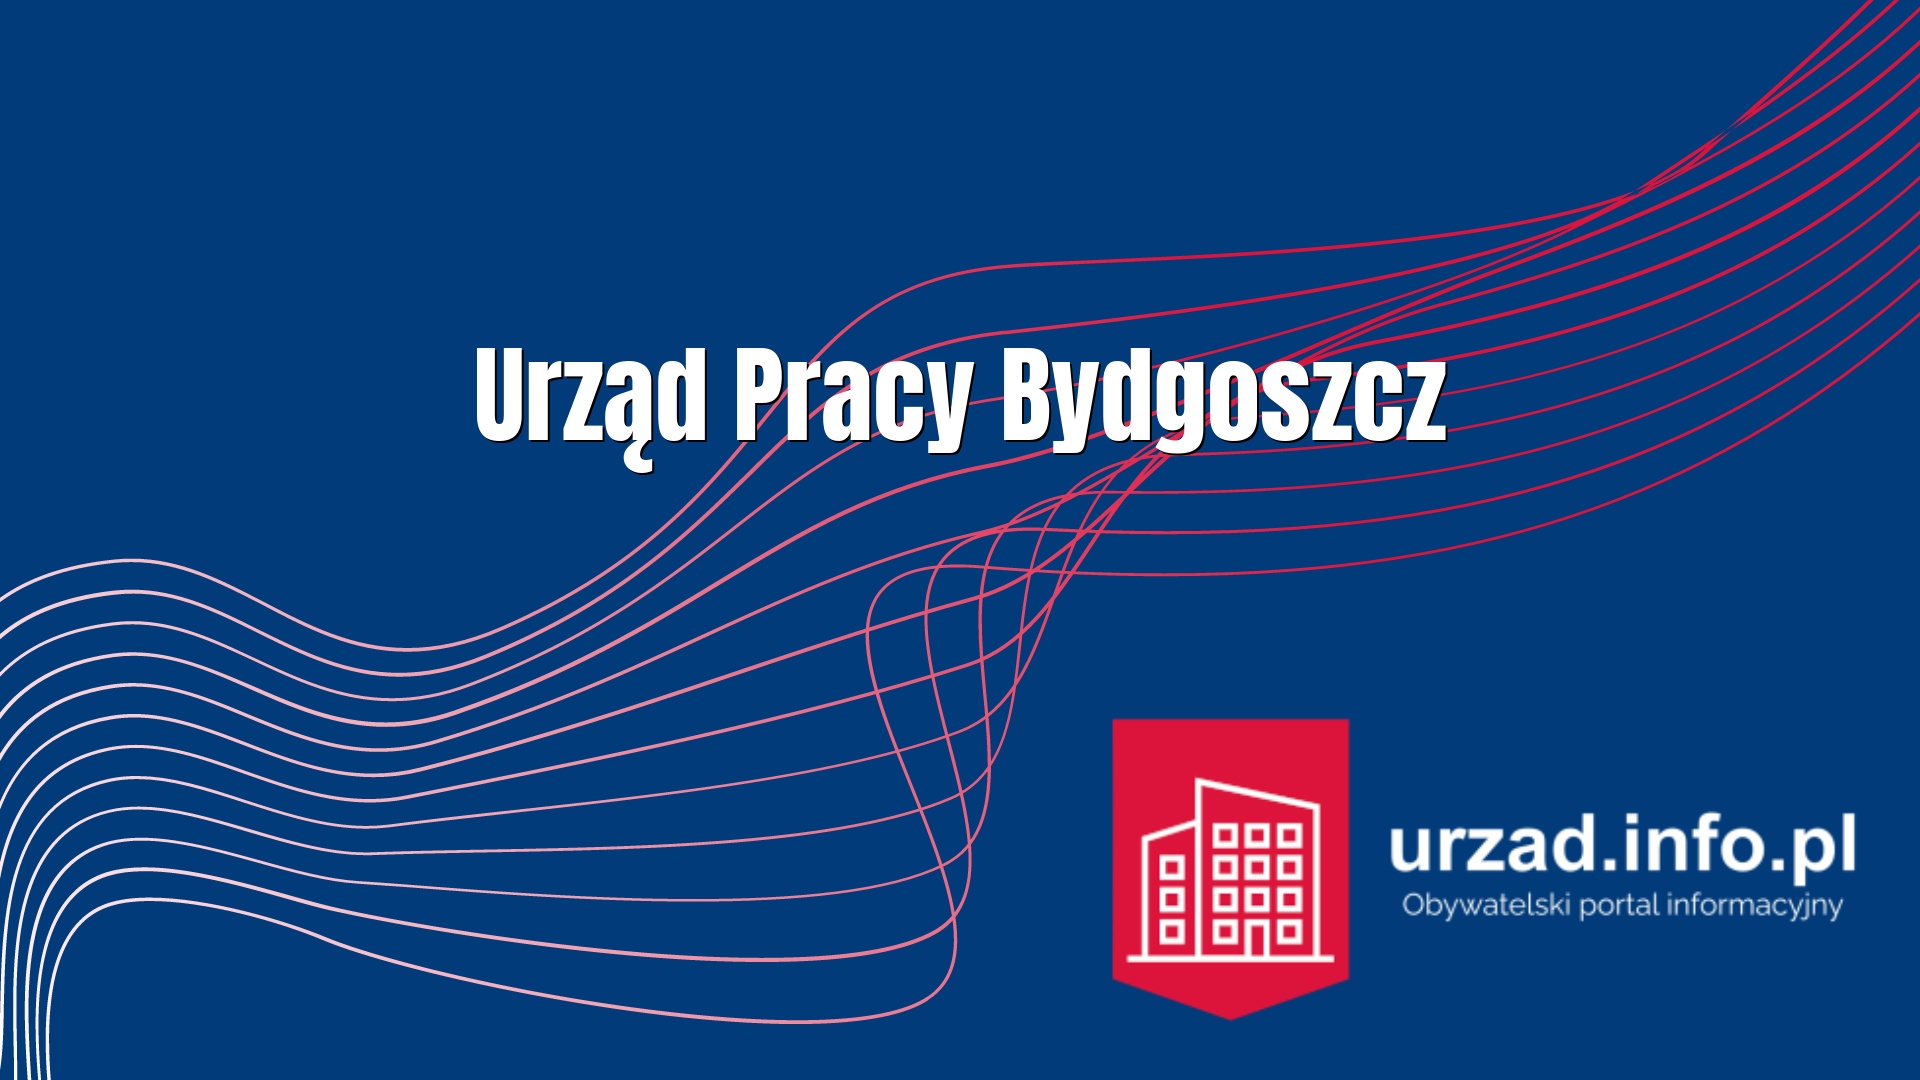 Urząd Pracy Bydgoszcz